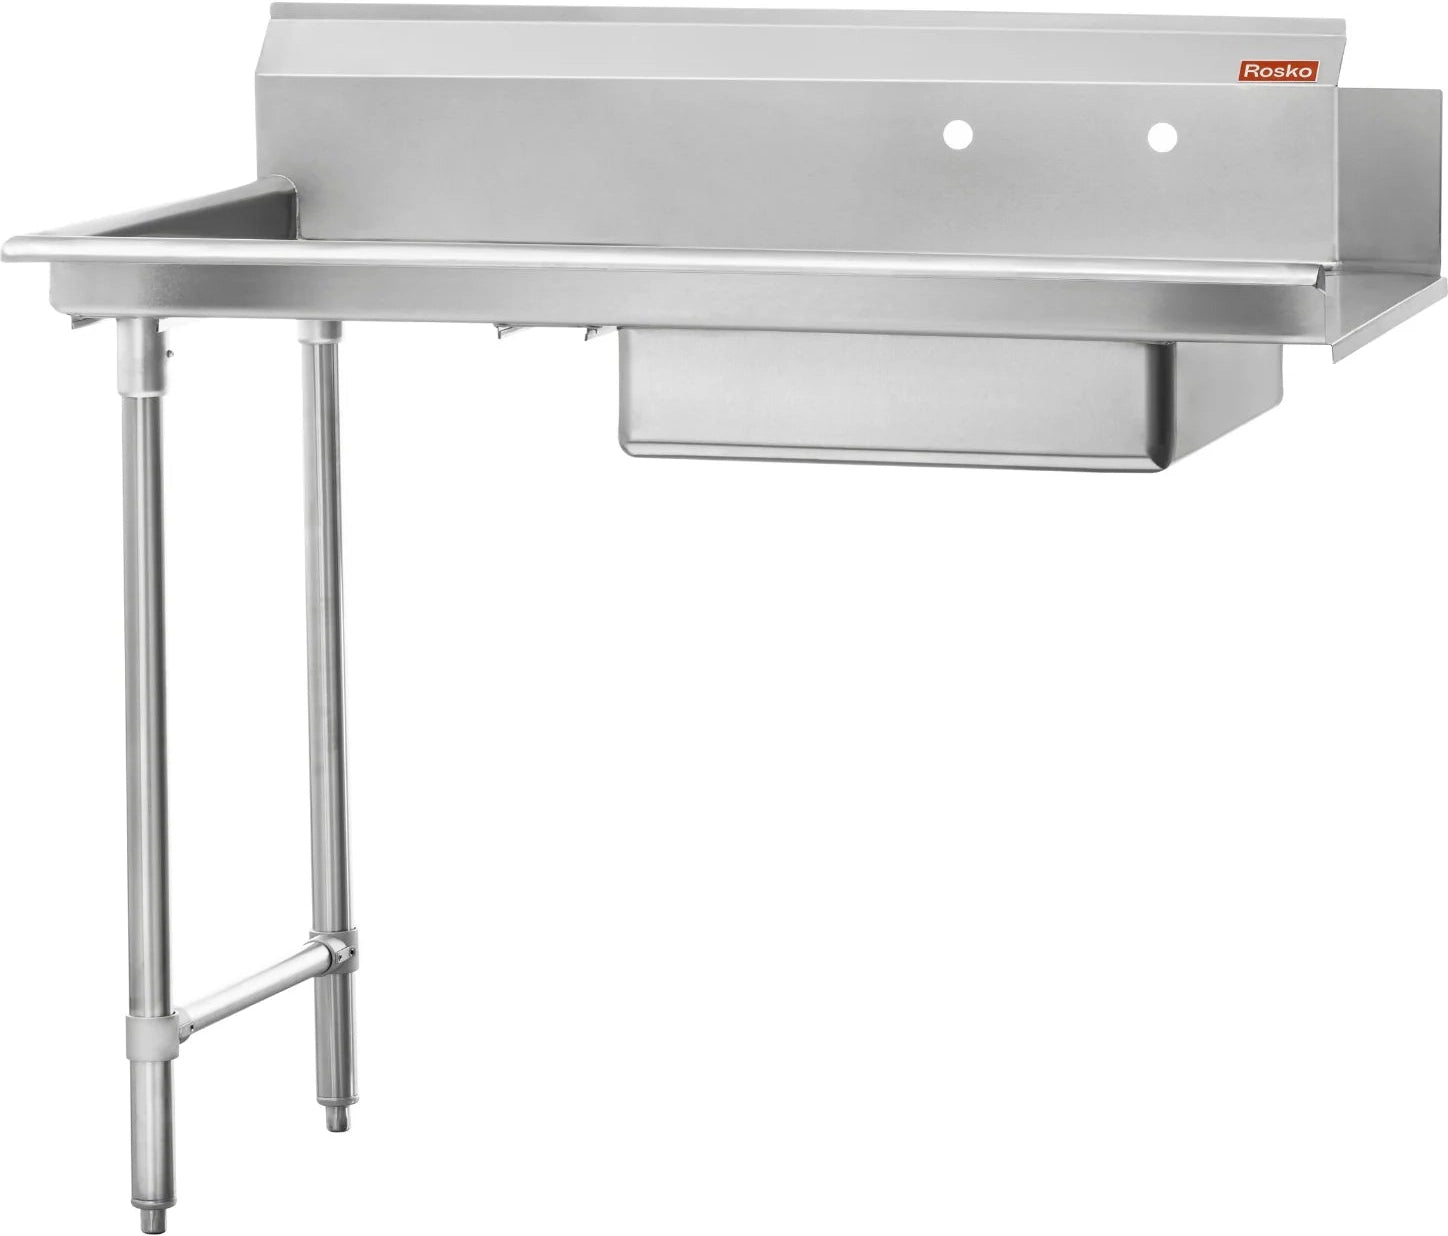 Julien - Rosko 36" x 30" Soiled Dish Table, Left Side, Stainless Steel - RO-SDT-3630-L